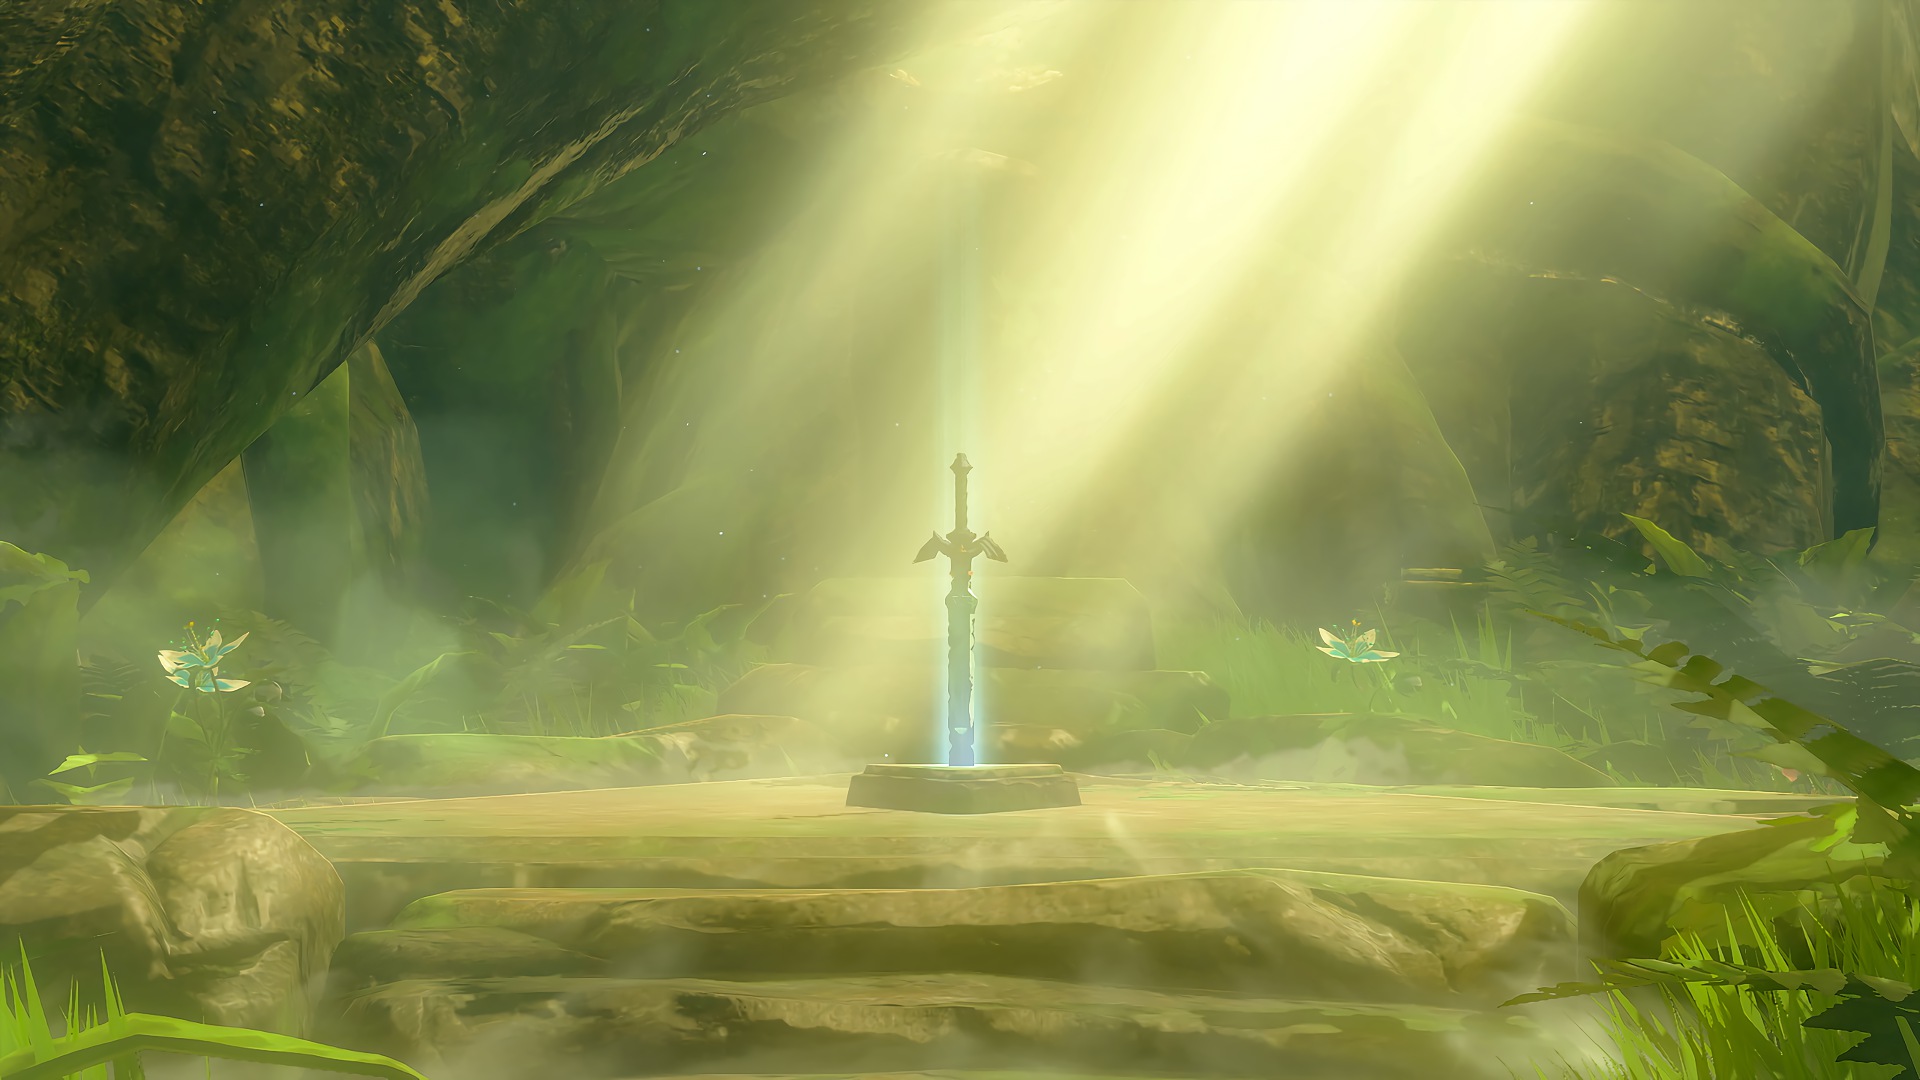 sword, the legend of zelda: breath of the wild, zelda, video game